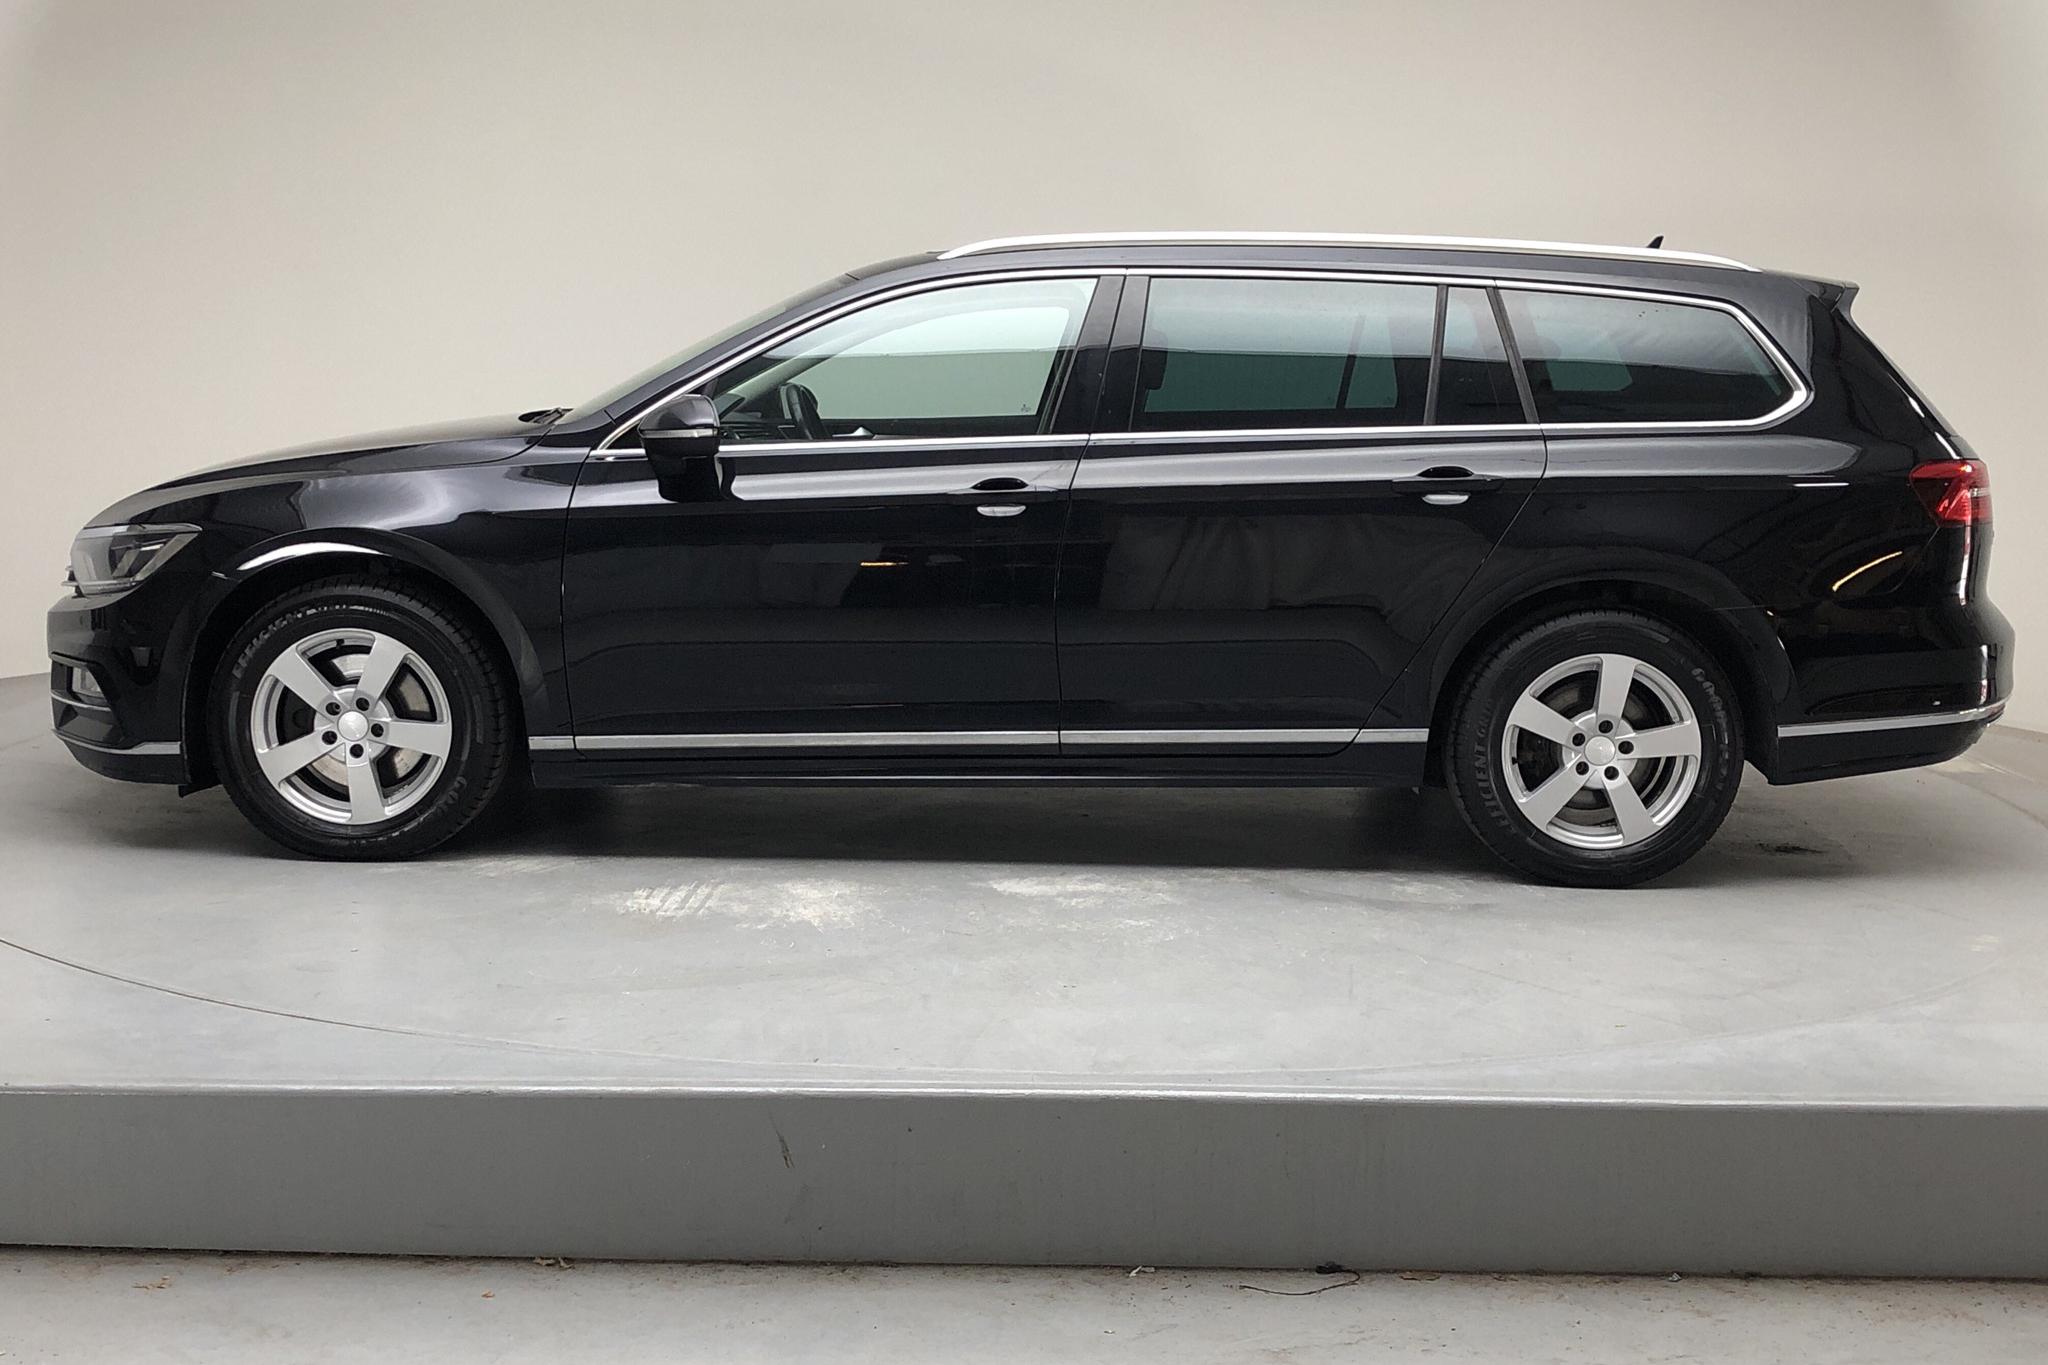 VW Passat 2.0 TDI Sportscombi (190hk) - 115 560 km - Manual - black - 2017